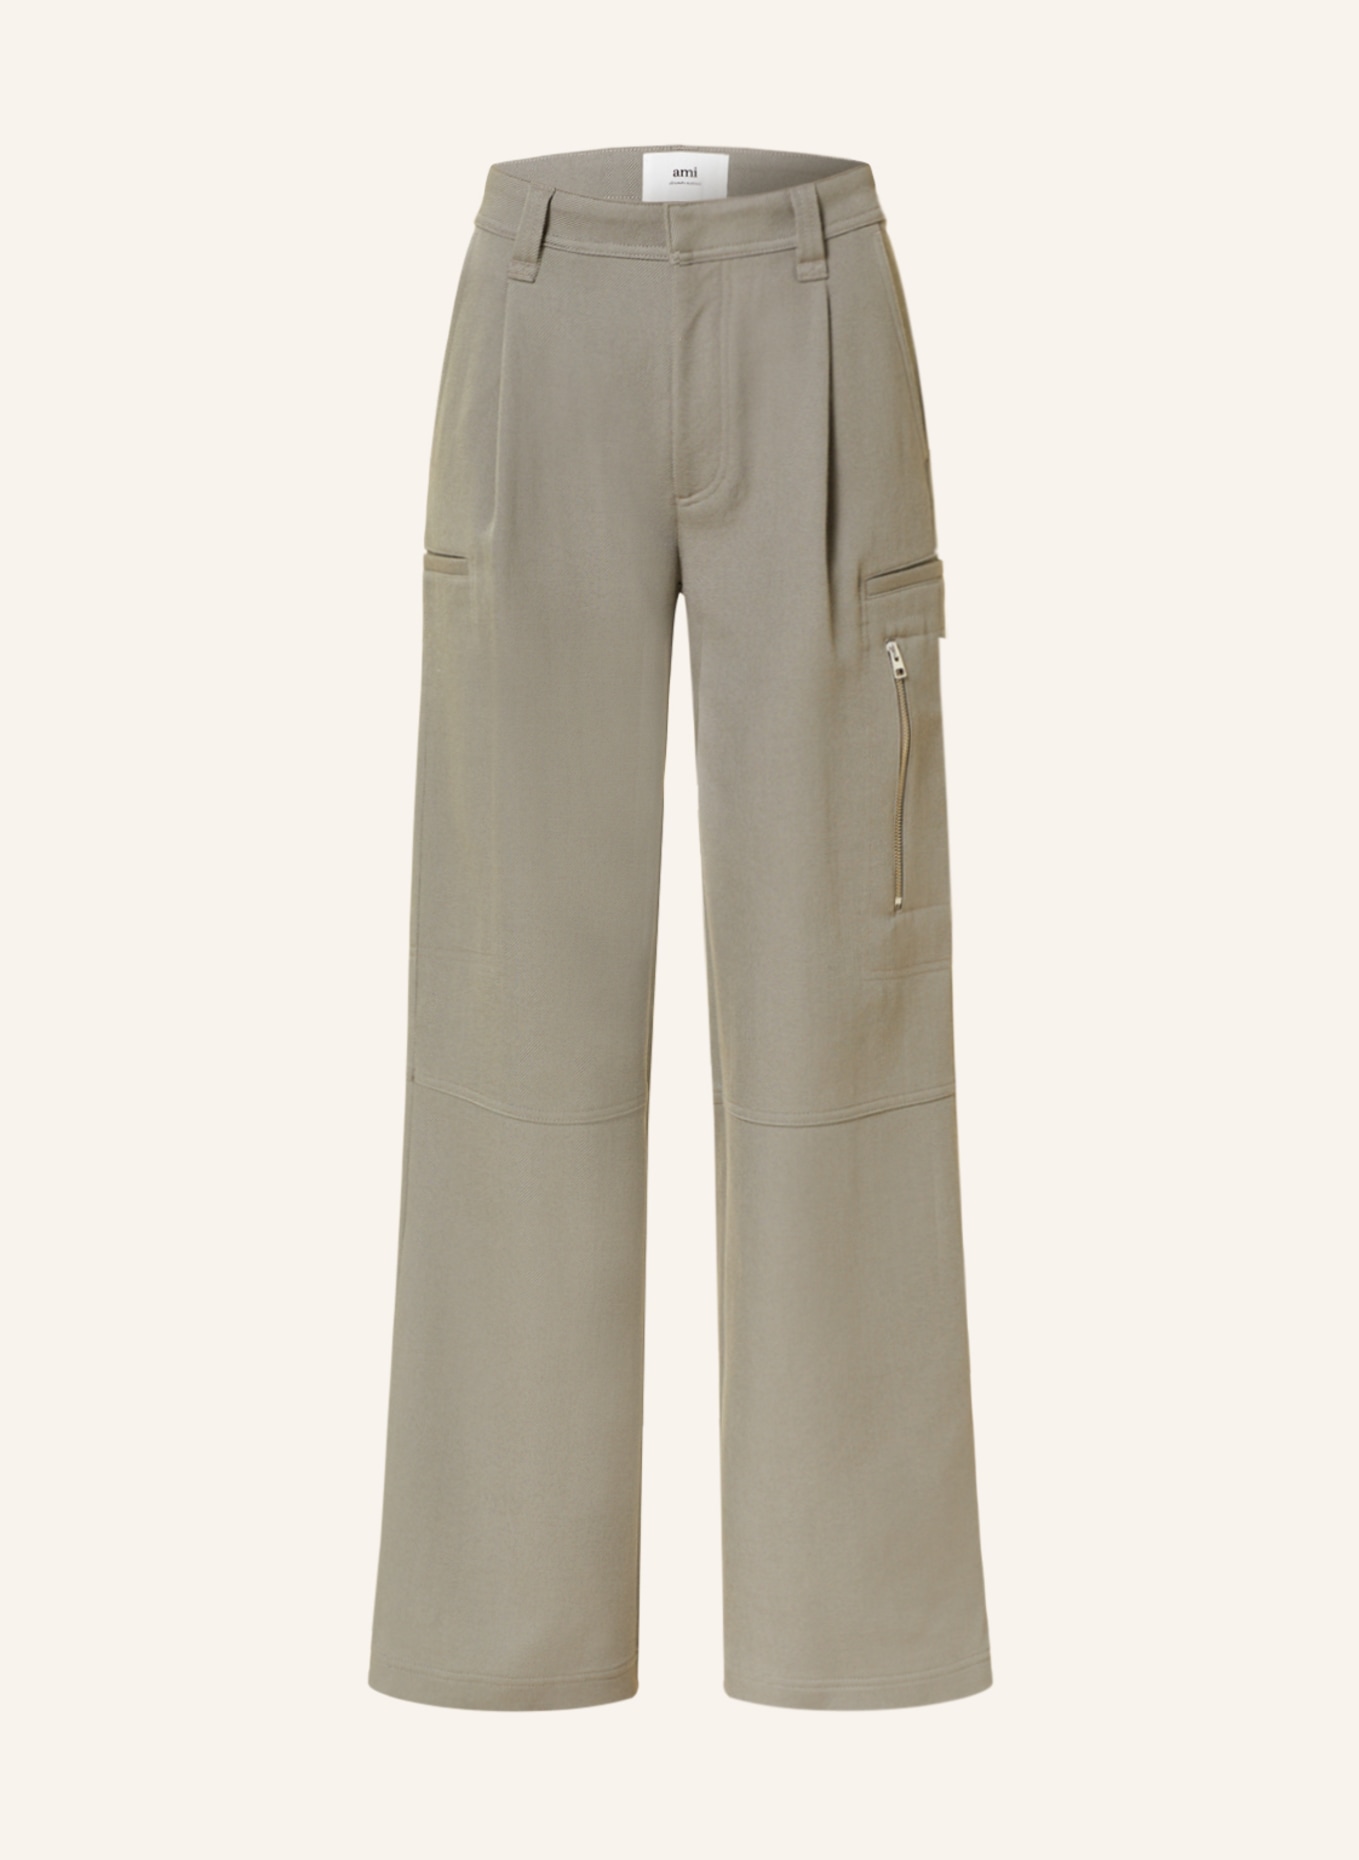 AMI PARIS Cargo pants, Color: TAUPE (Image 1)